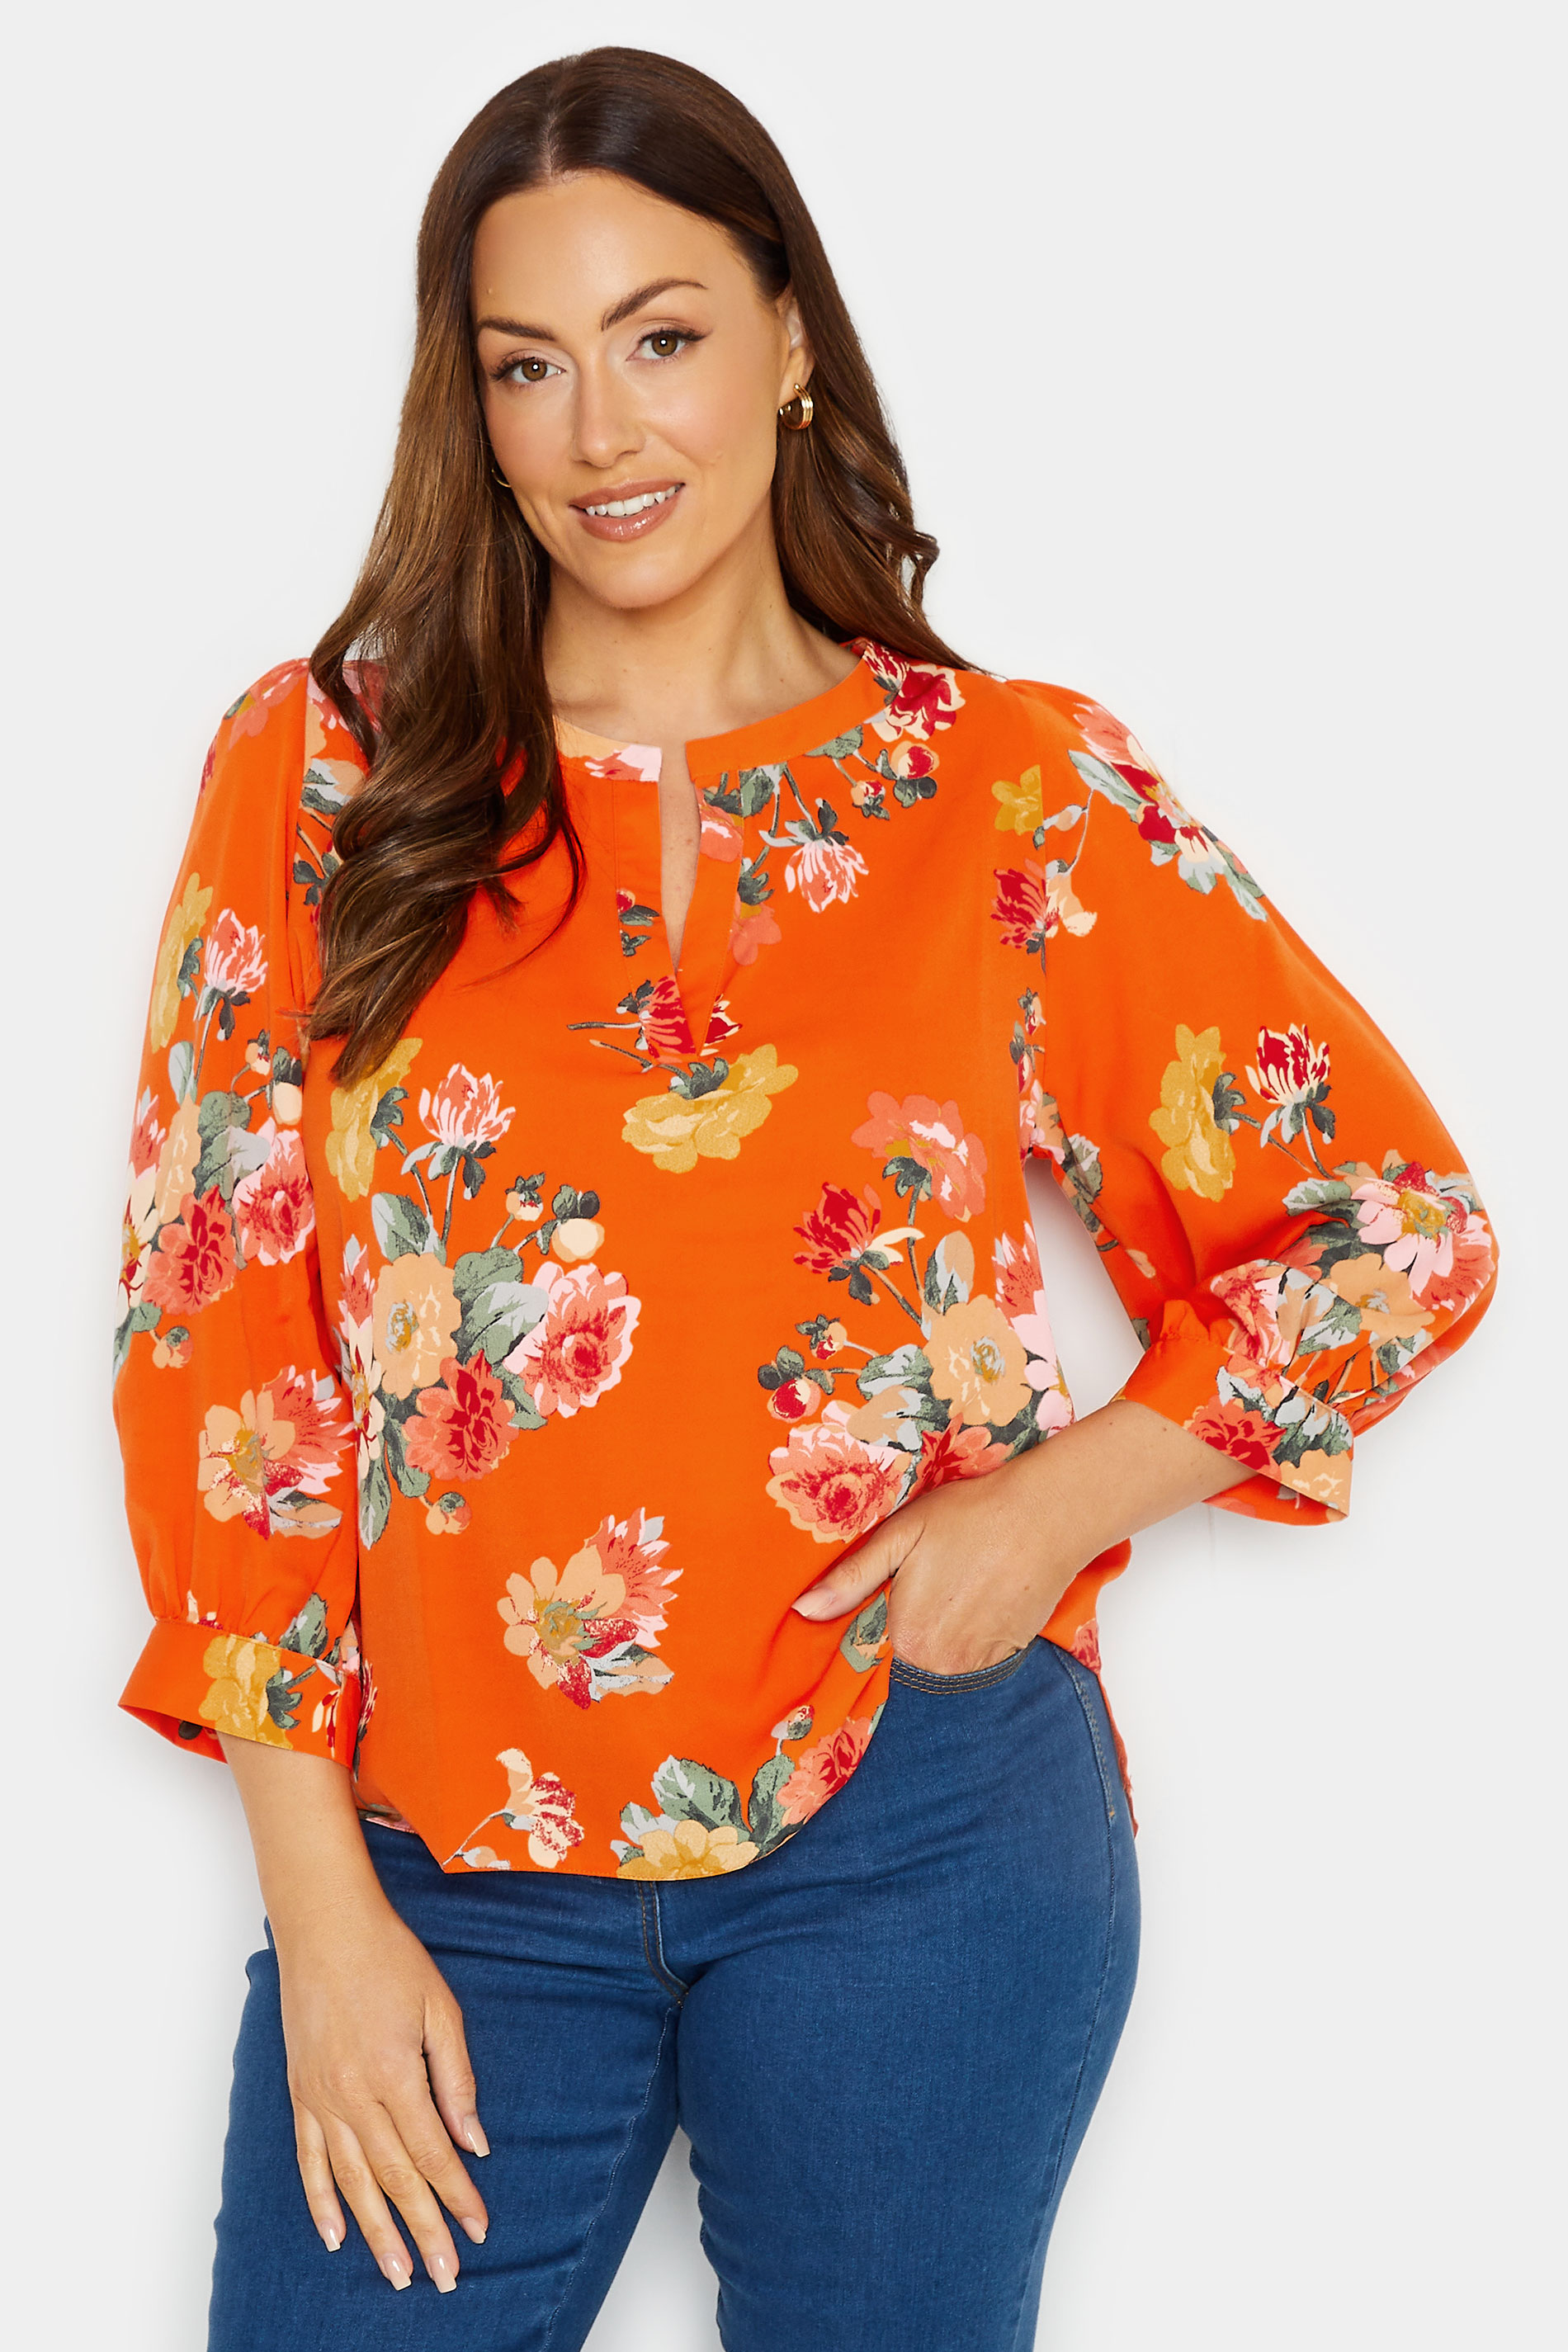 M&Co Orange Floral 3/4 Sleeve Blouse | M&Co